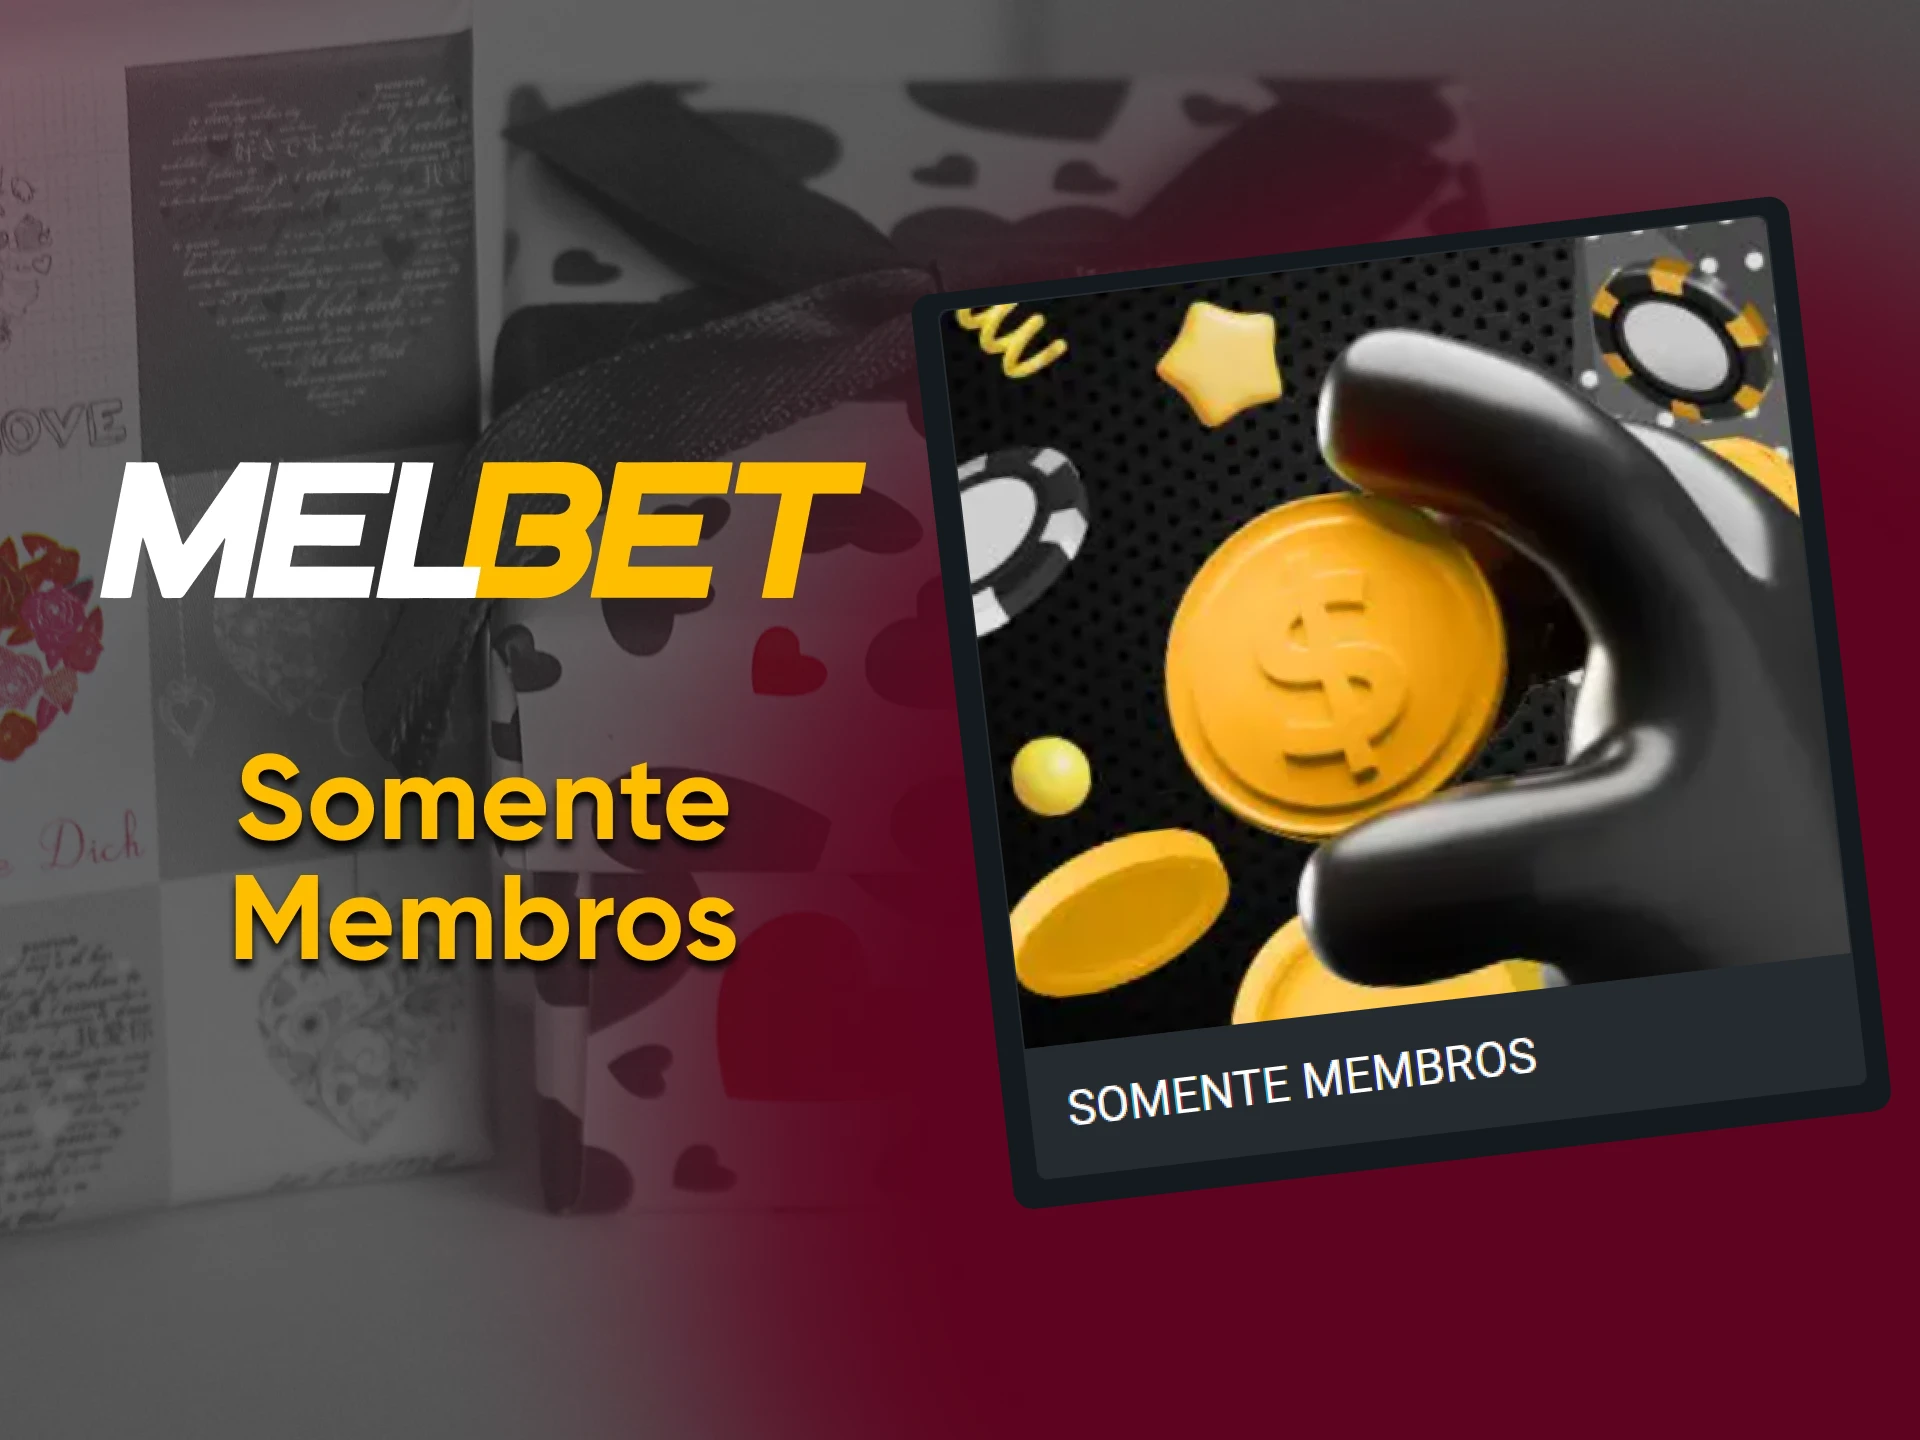 O site da Melbet tem um bônus separado para jogos de cassino.